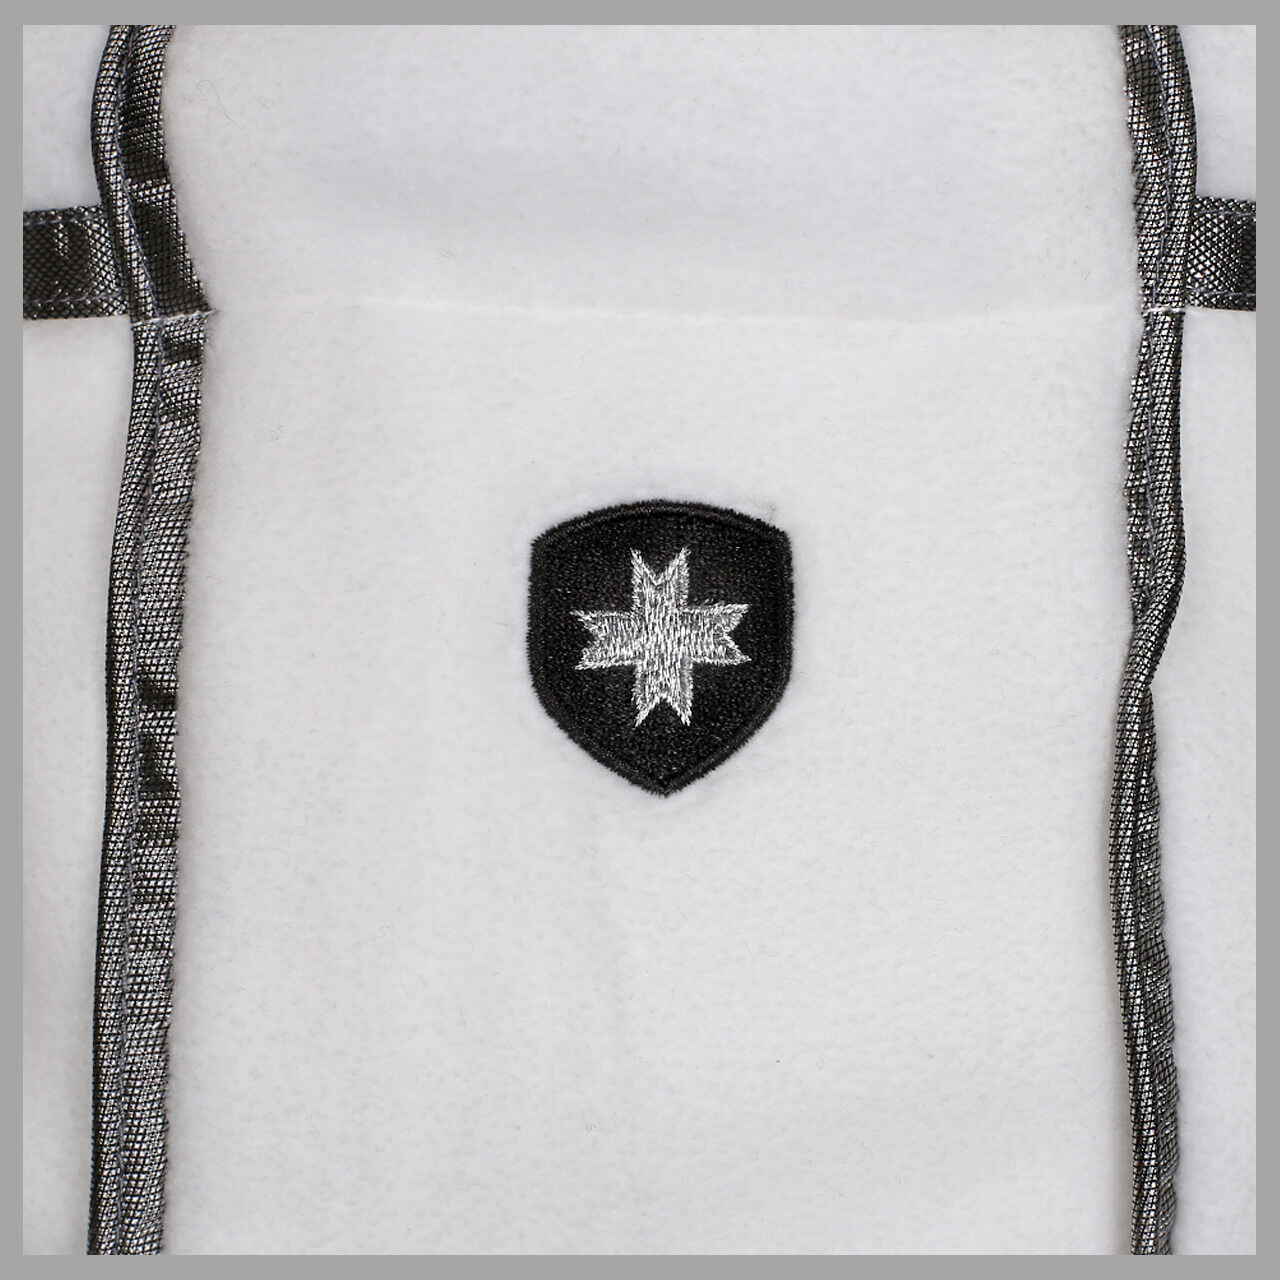 Wellensteyn Chimonix Fleece Jacke für Damen in Weiß, FarbNr.: CHX-10